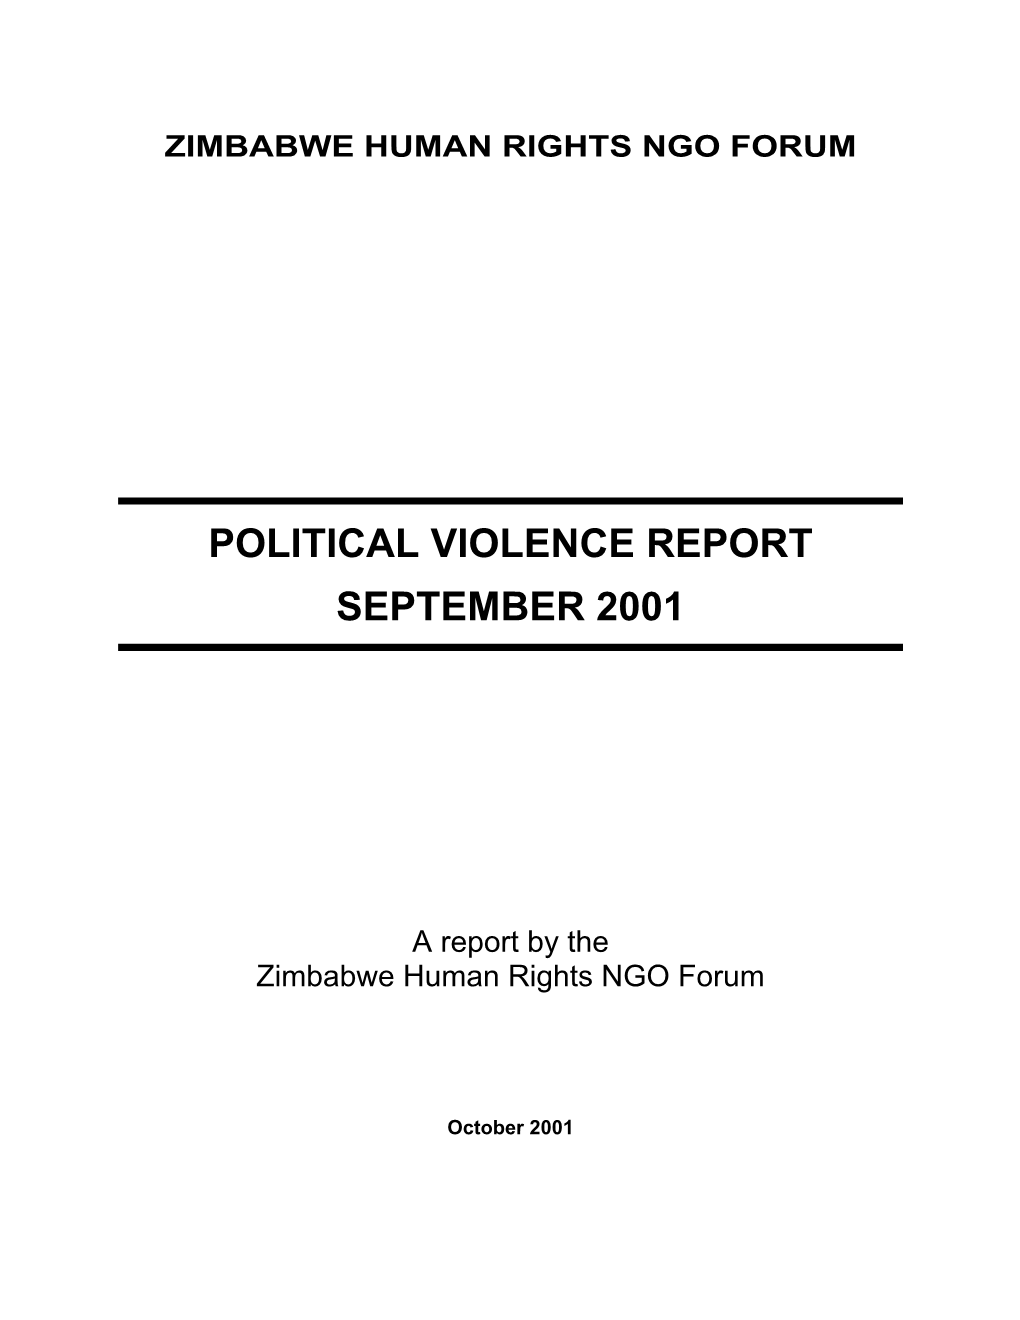 Political Violence Report September 2001